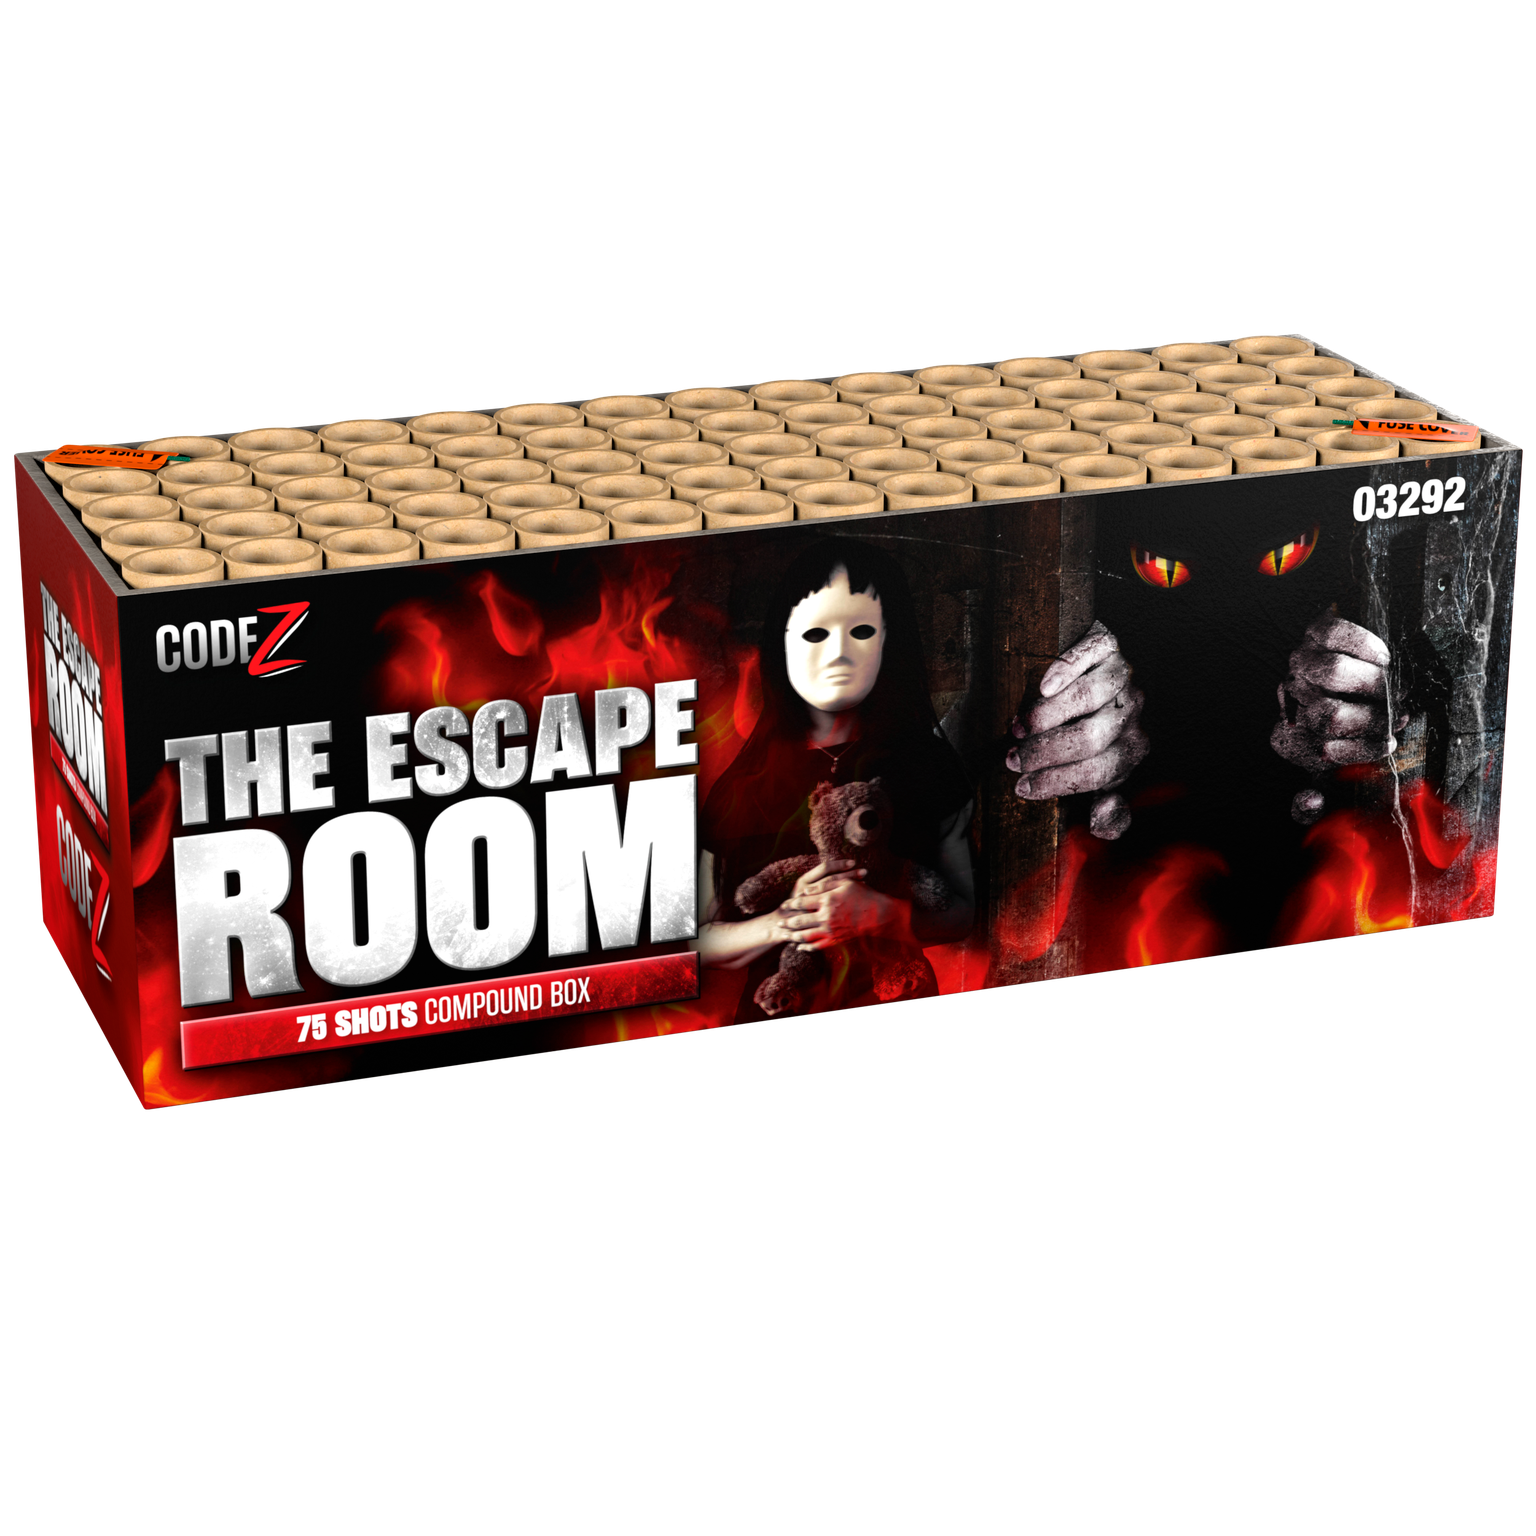 3292-the-escape-room-code-z_56764054-7aa1-41dd-96b0-2a3f3ff8f1d7.png